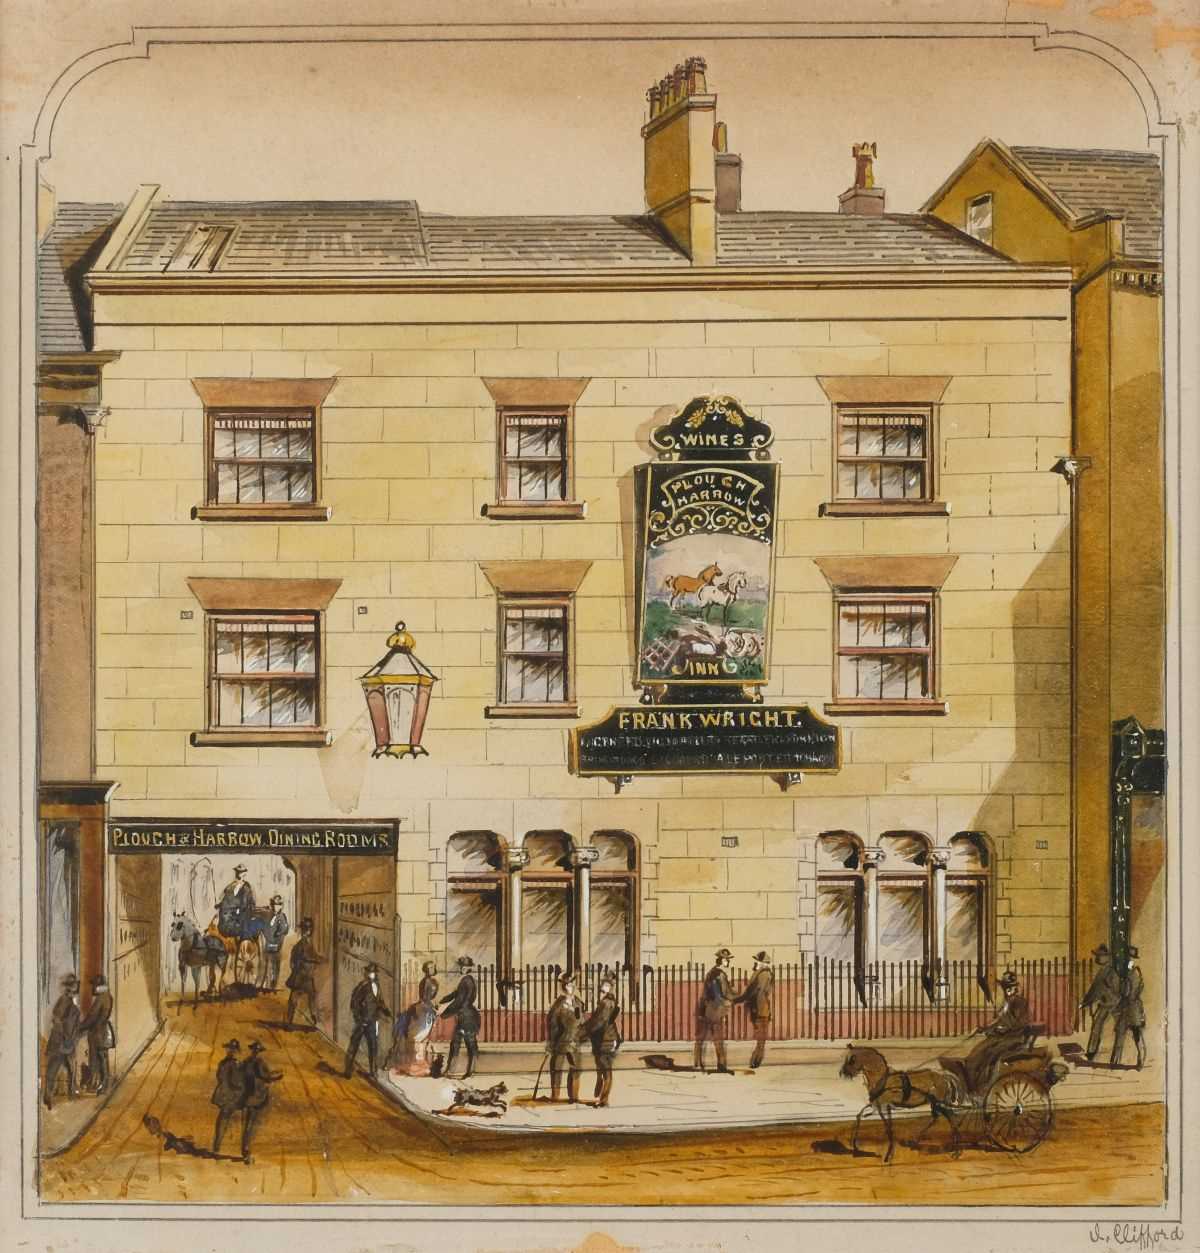 Lot 433 - Clifford (C., late 19th century). The Plough & Harrow Inn, circa 1880s